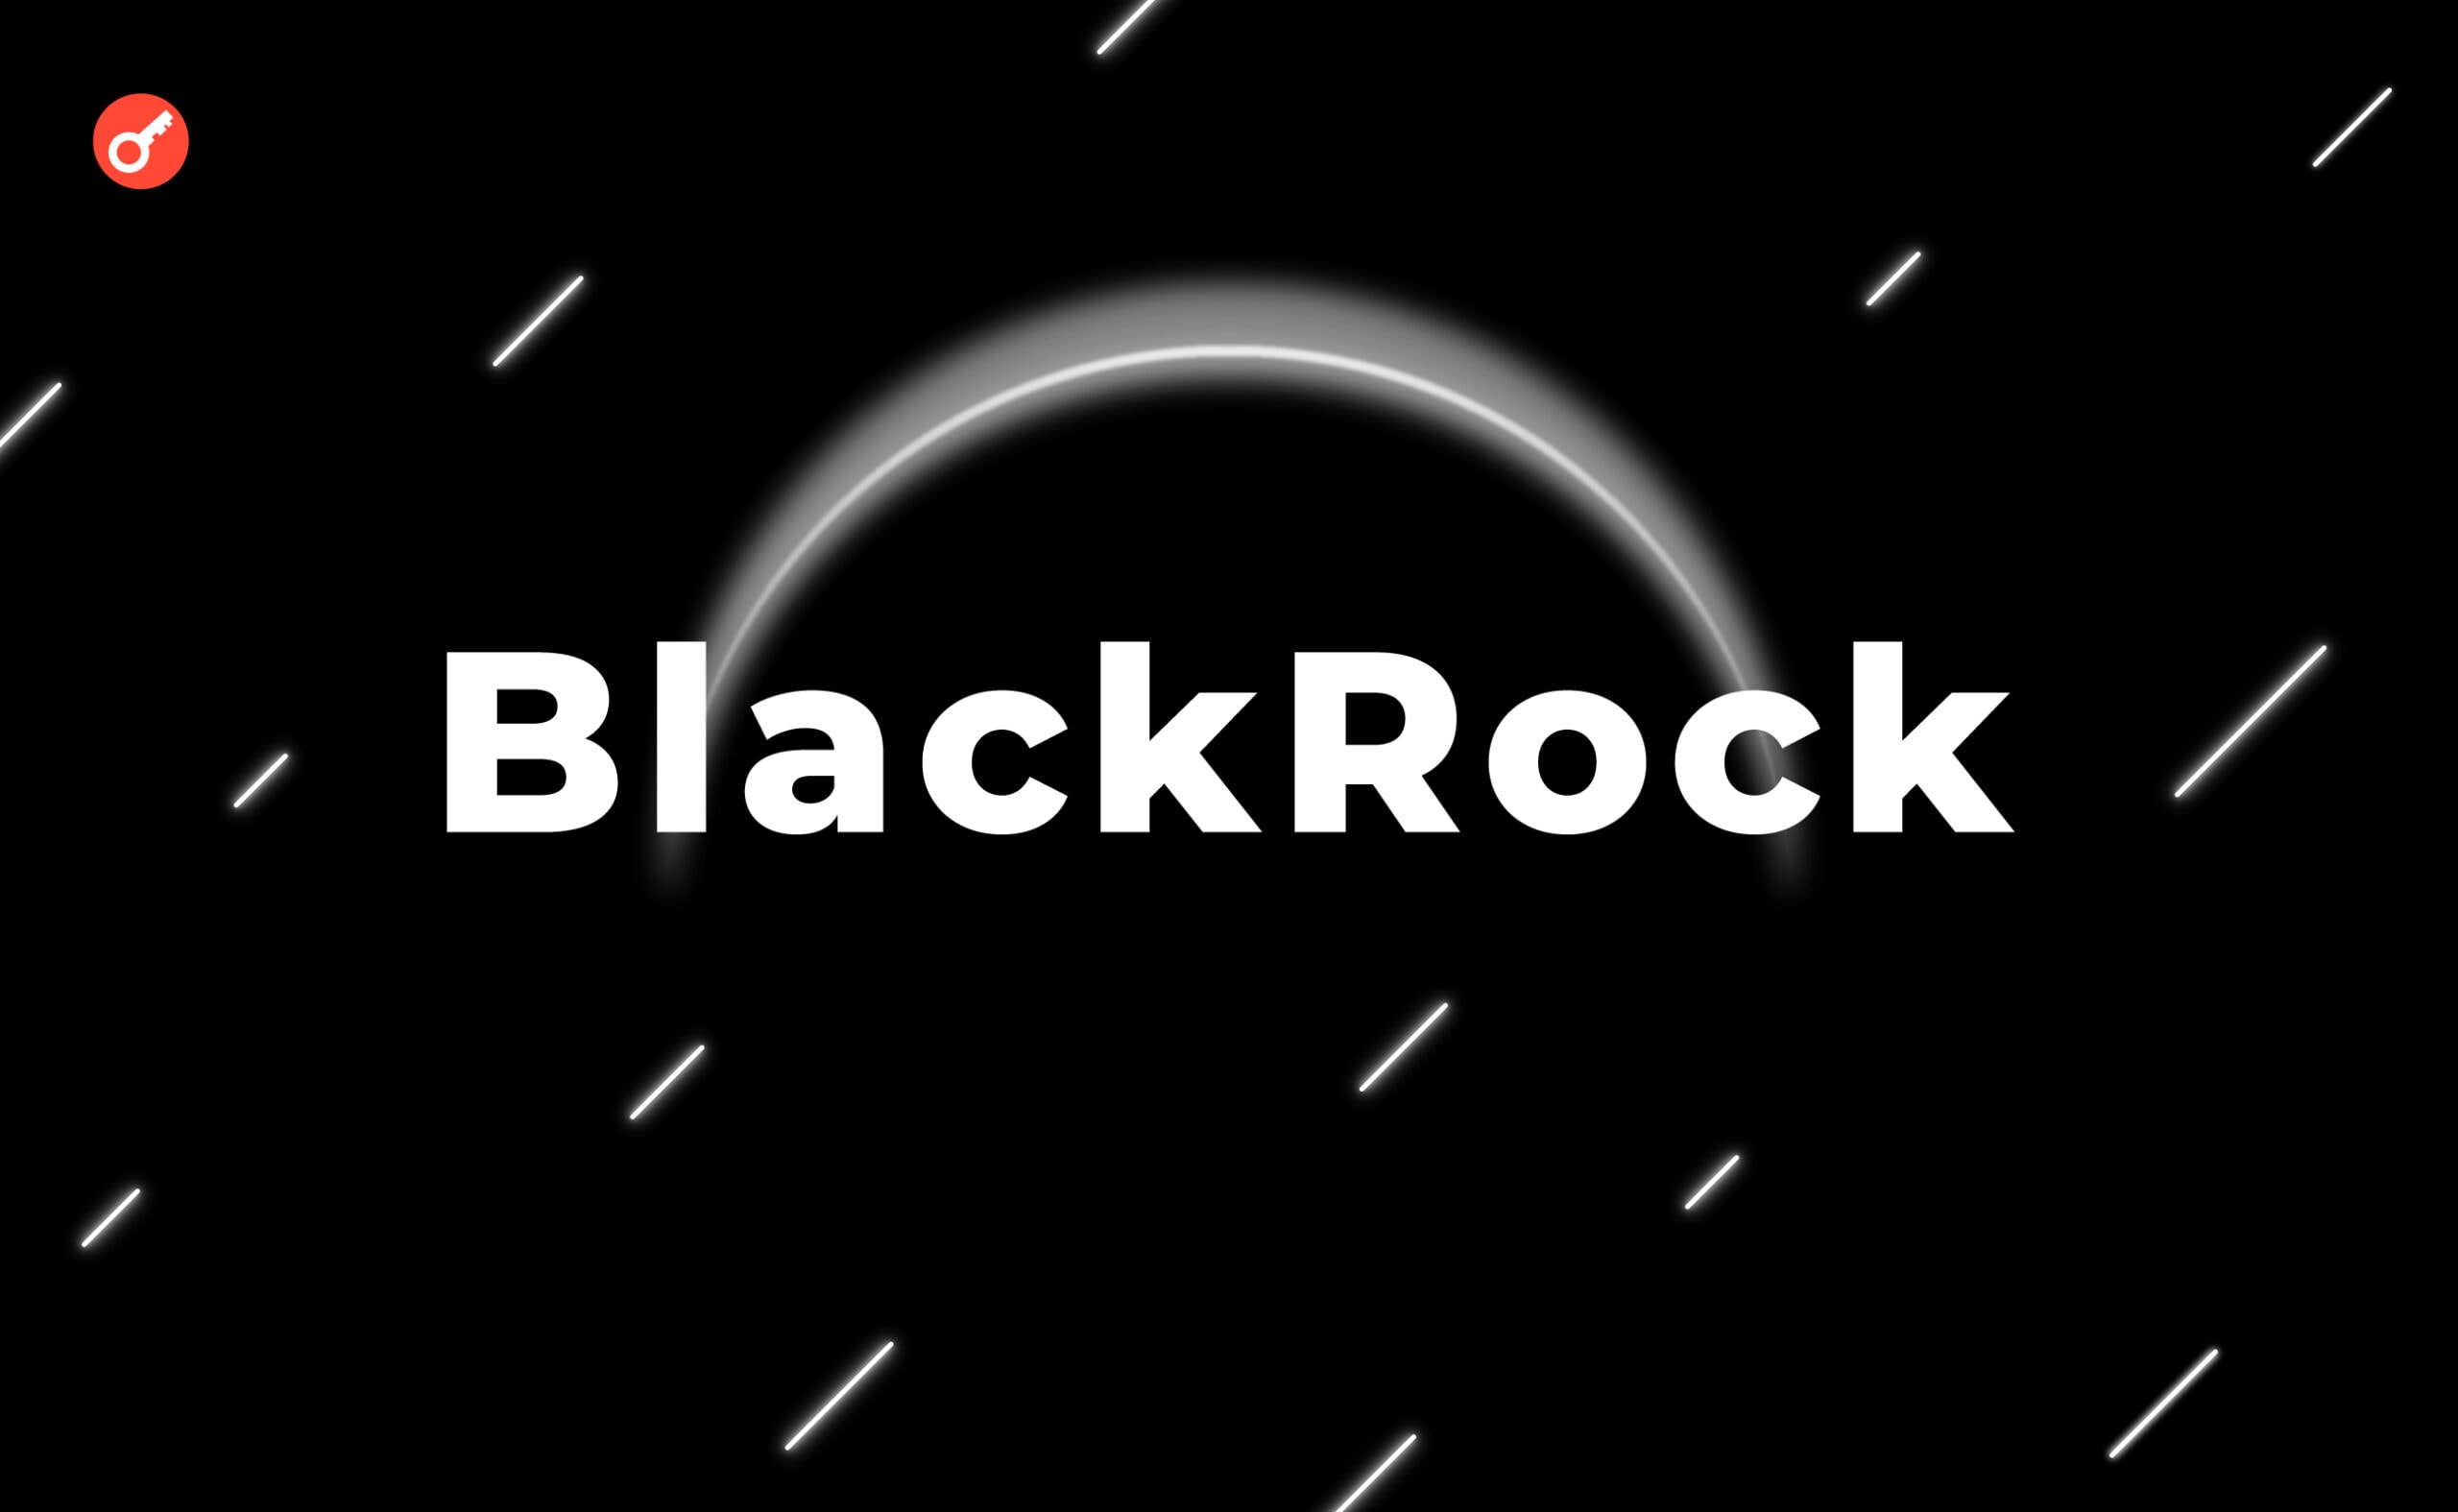 CEO BlackRock радикально изменил свое мнение относительно Биткоина. Заглавный коллаж новости.